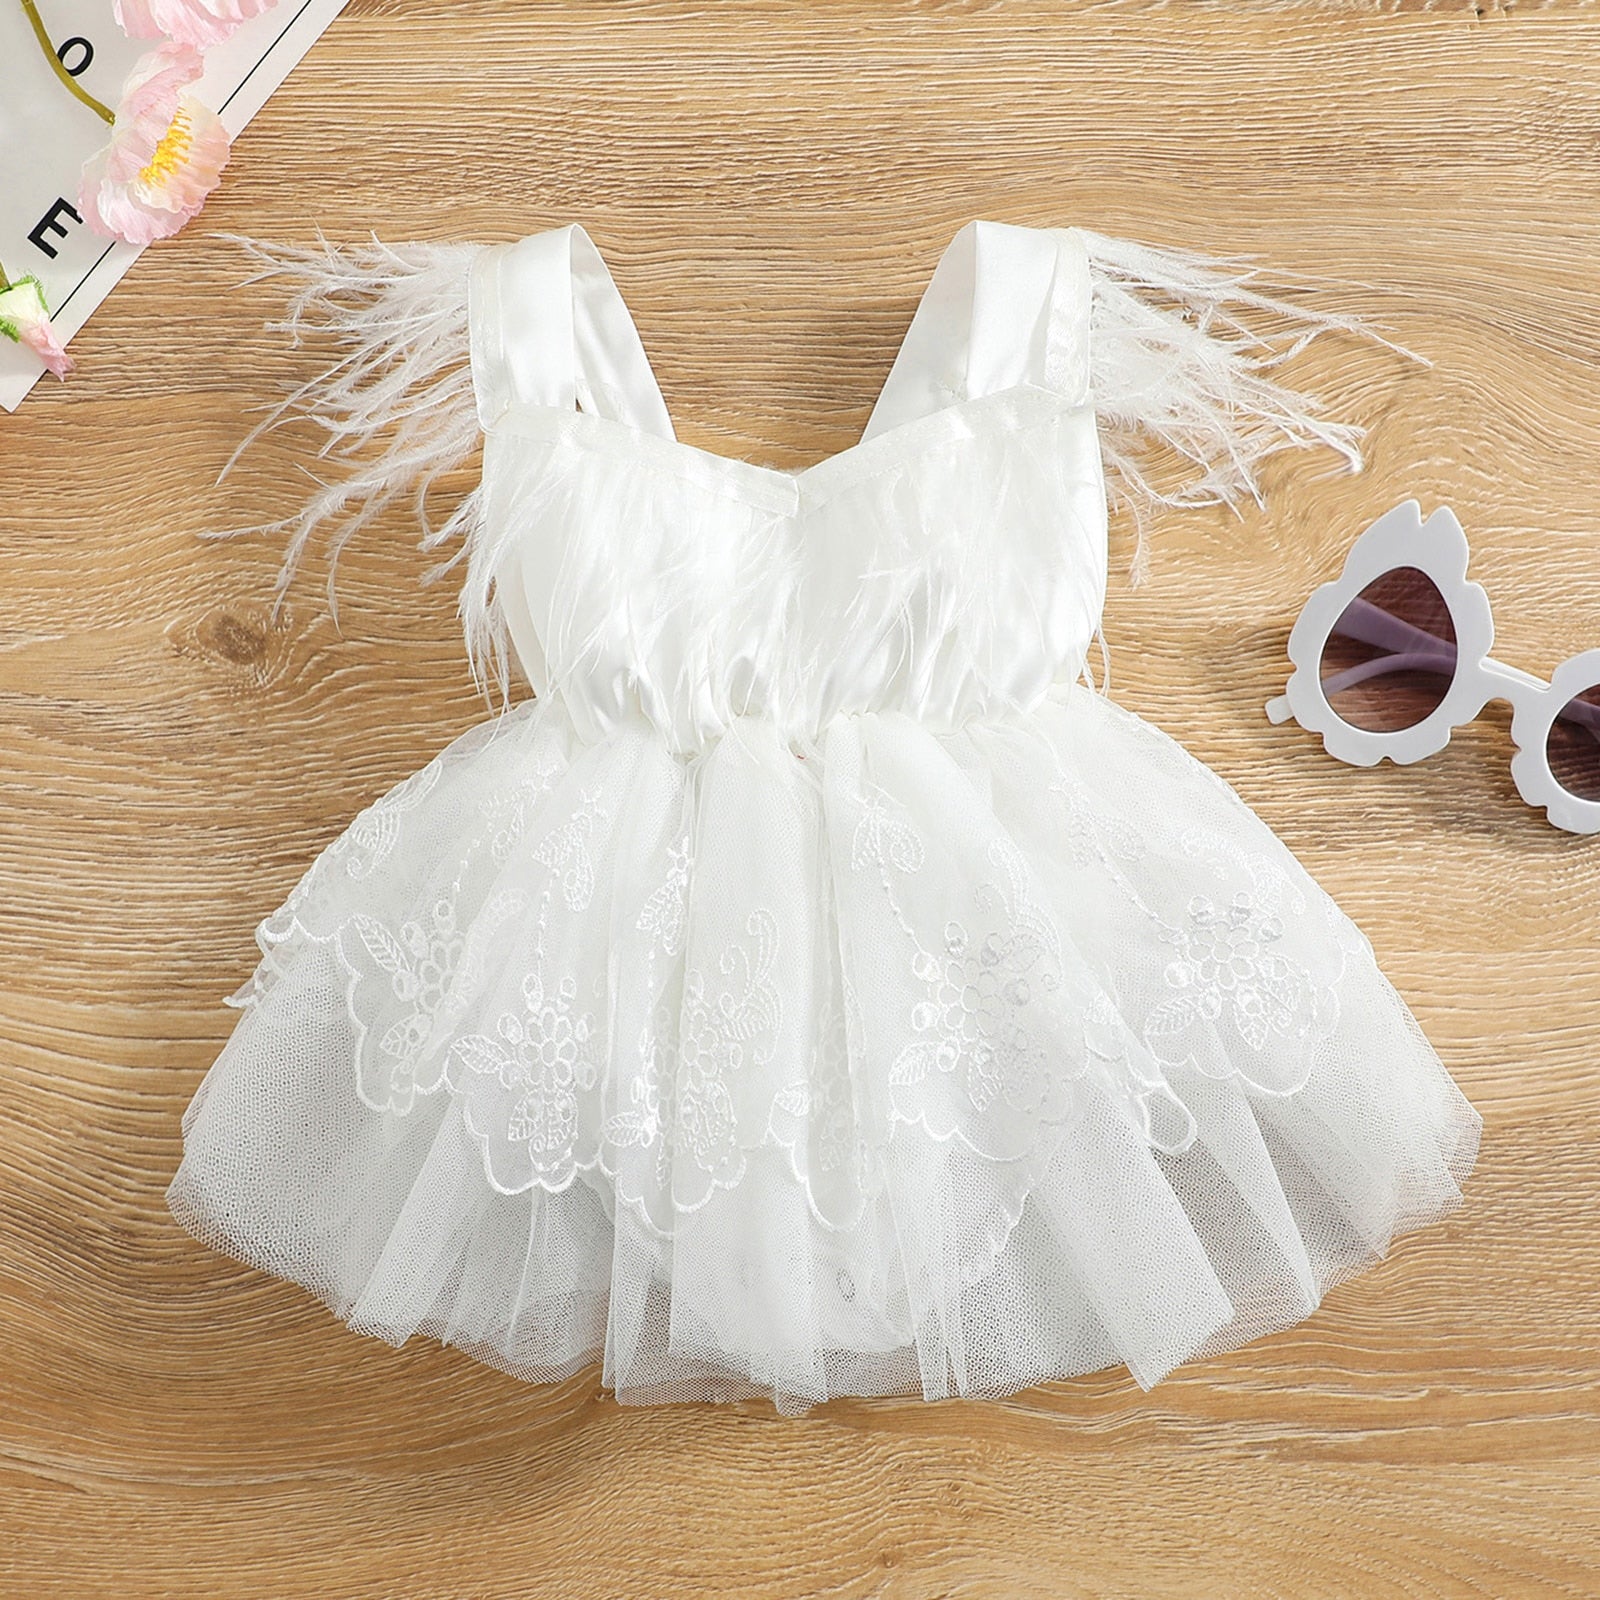 Vestido Body Infantil Bordado e Penas vestido Loja Click Certo Branco 0-6 meses 35cm 